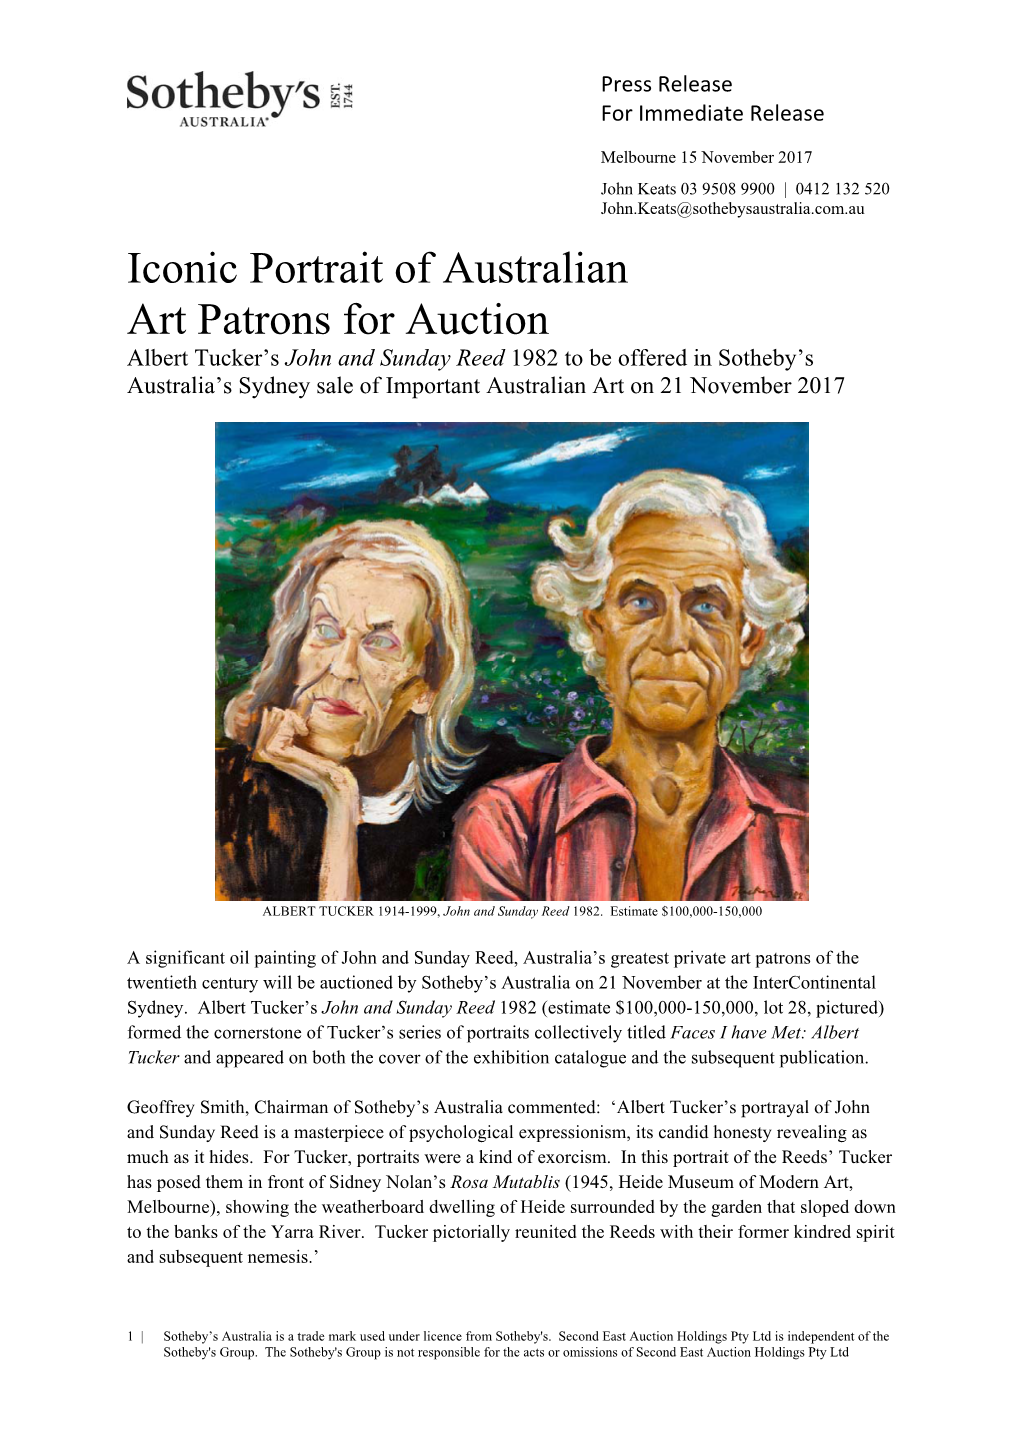 Iconic Portrait of Australian Art Patrons for Auction